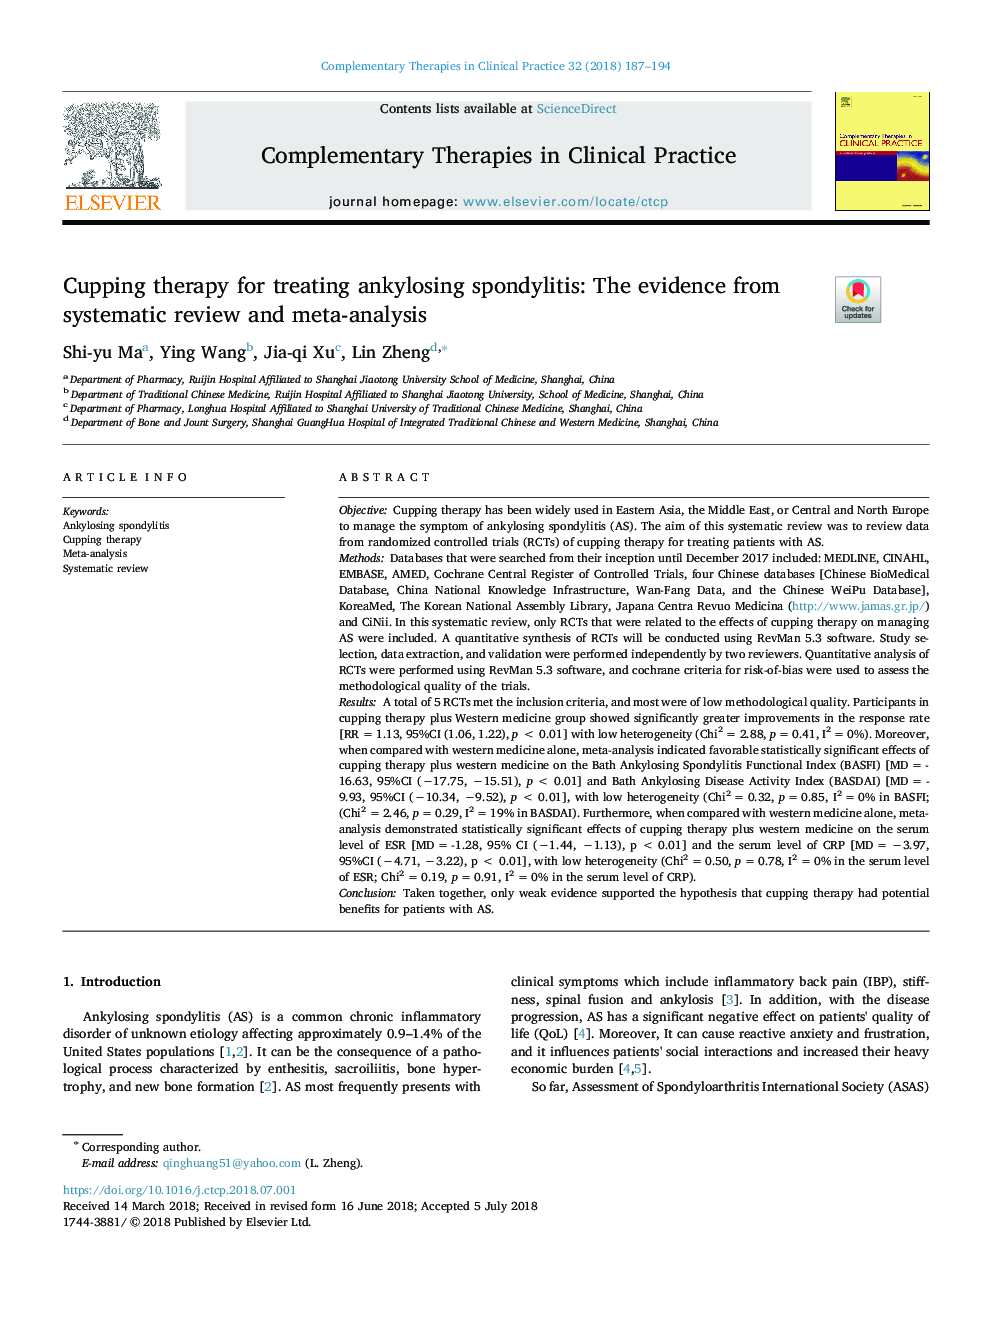 درمان کاپینگ برای درمان اسپوندیلیت انکیلوزینگ: شواهدی از بررسی سیستماتیک و متا آنالیز 